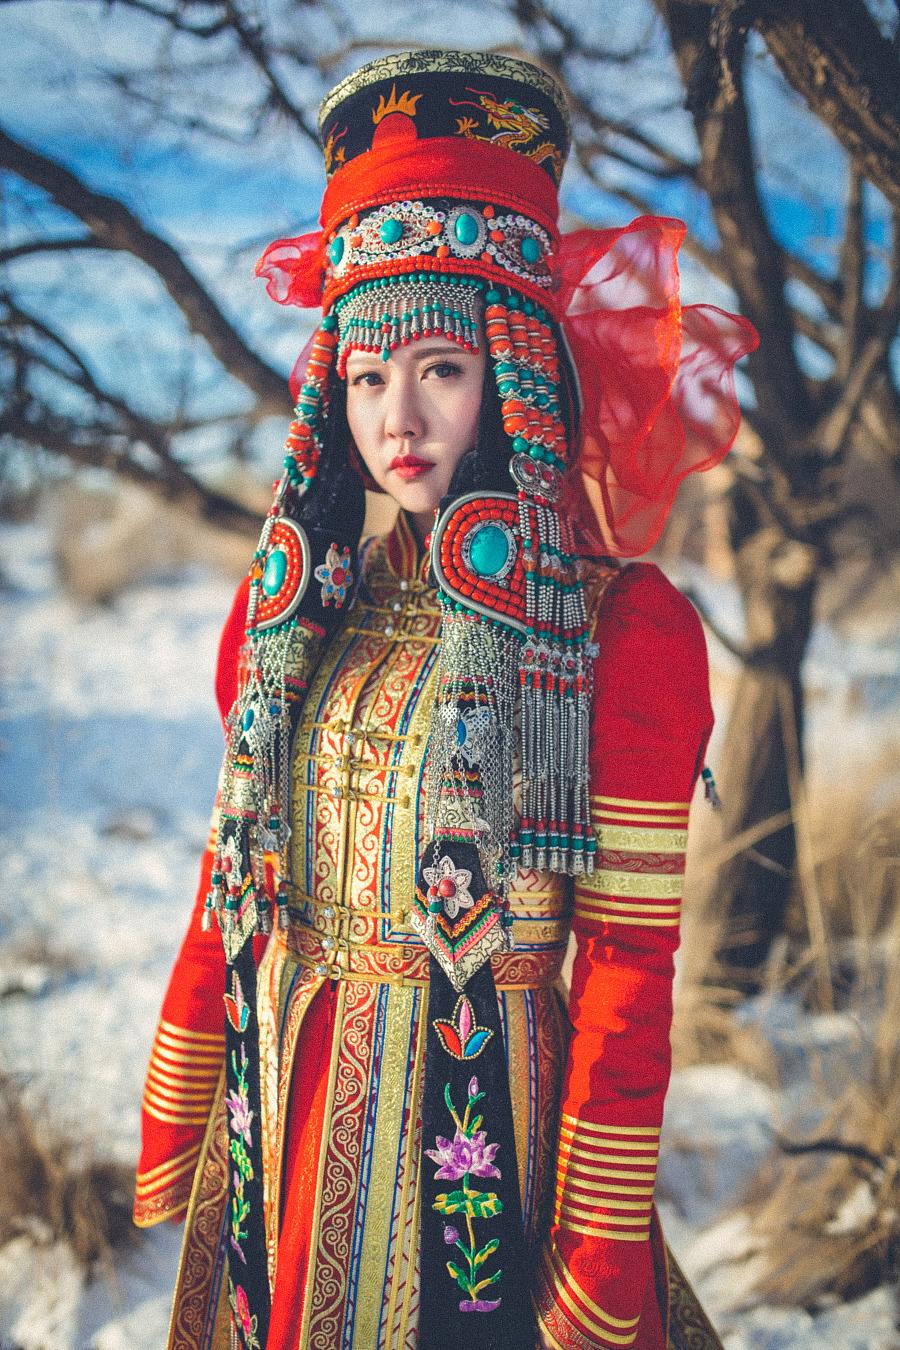 蒙古国一夫多妻制,但很多姑娘不愿结婚,不想跟